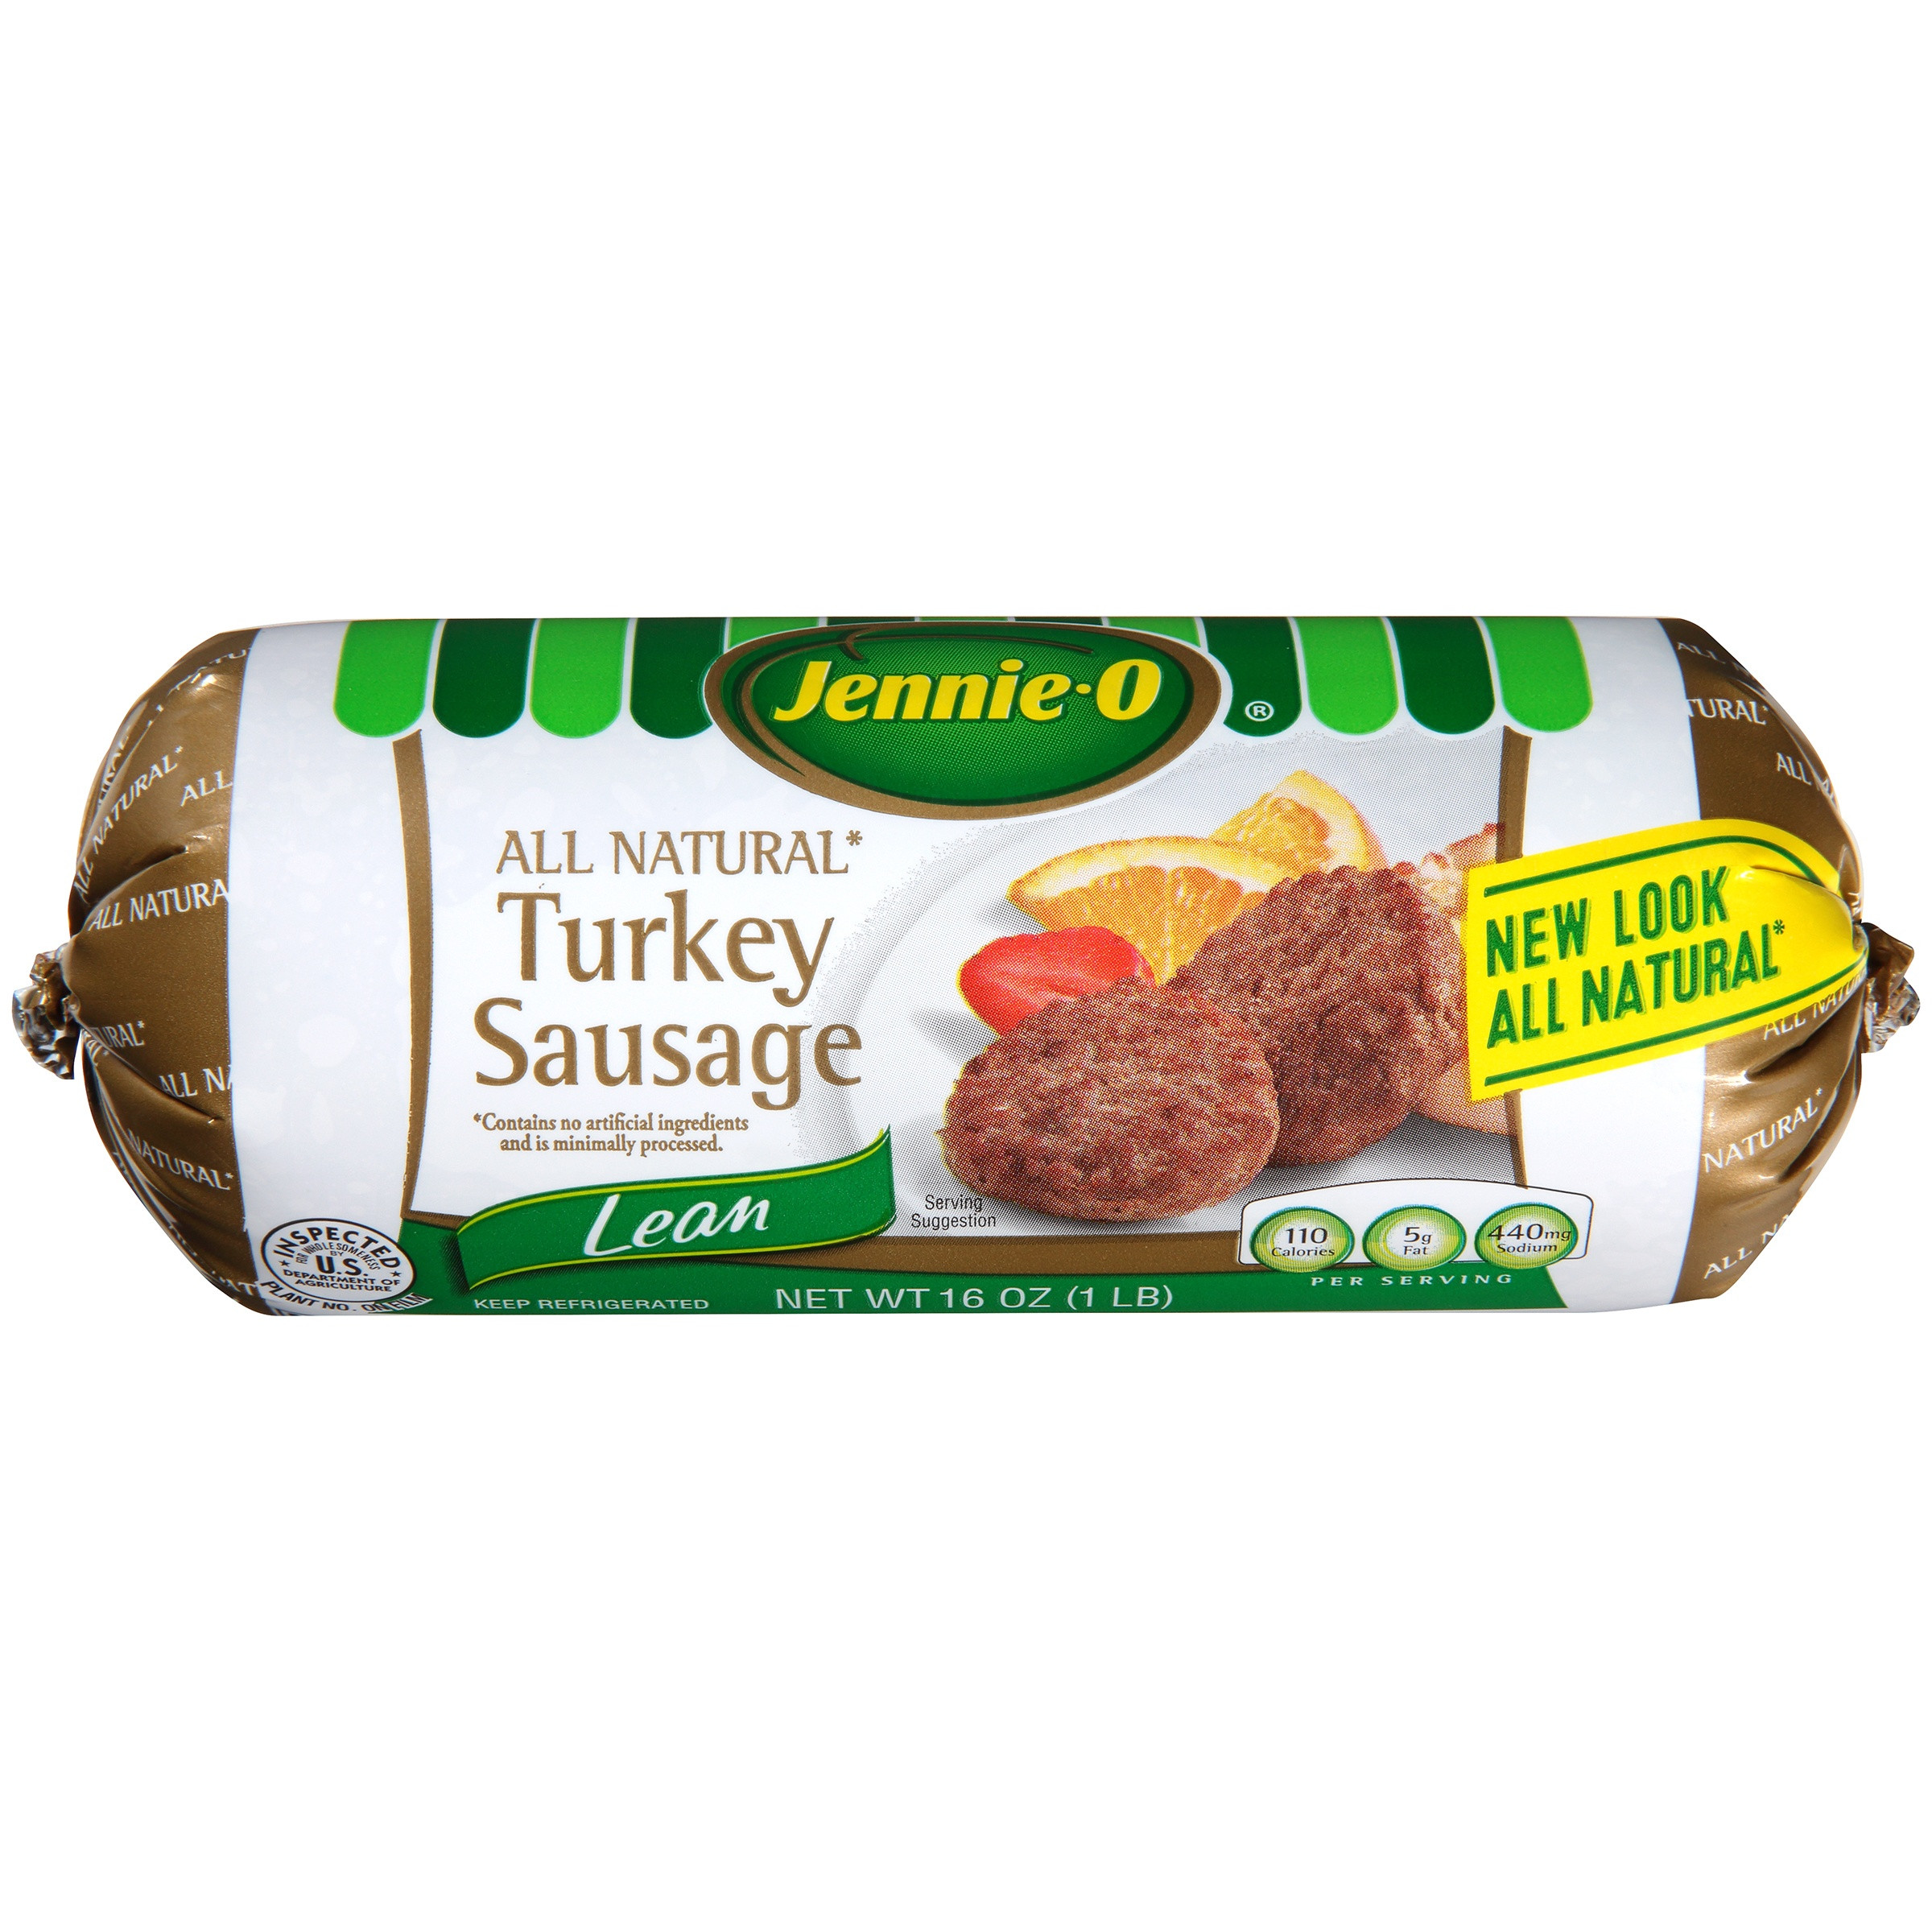 Turkey Sausage Healthy
 healthiest turkey sausage brand